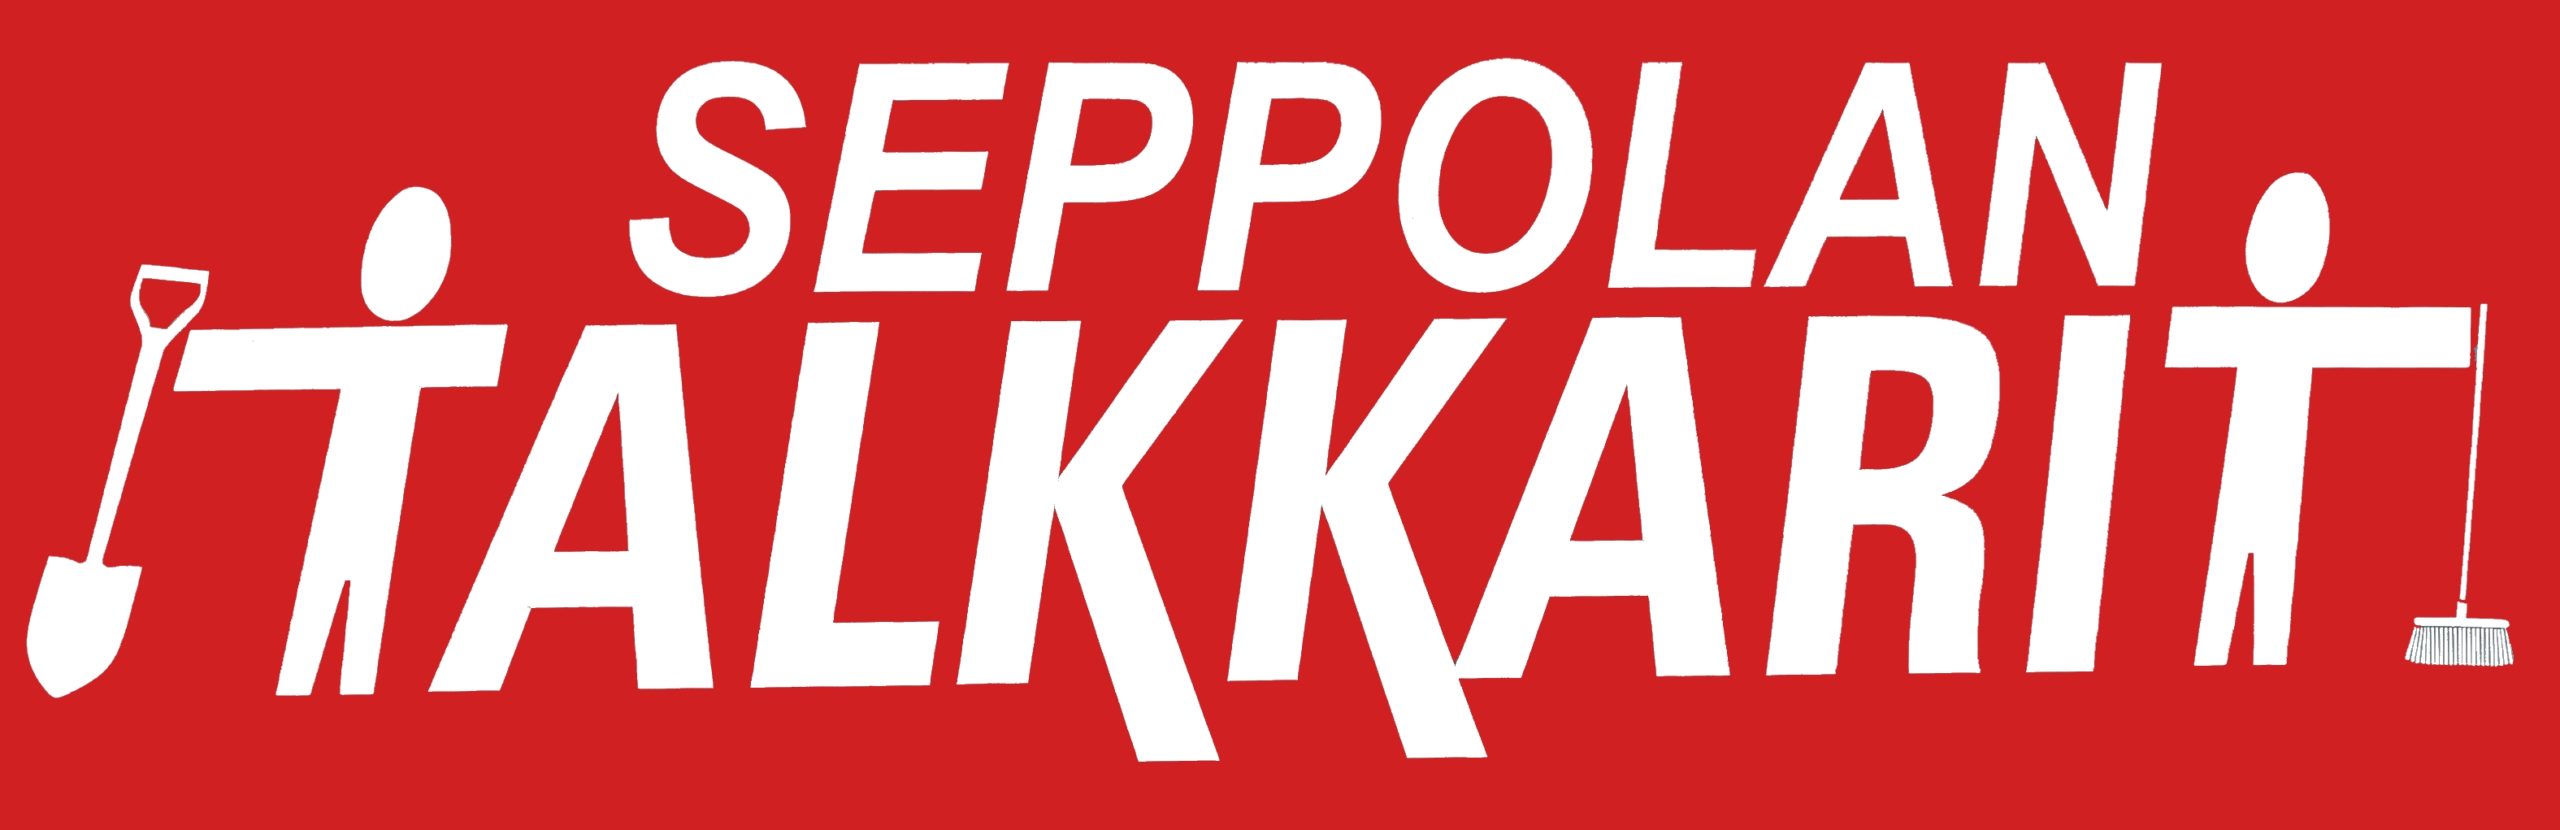 Seppolan Talkkarit Oy